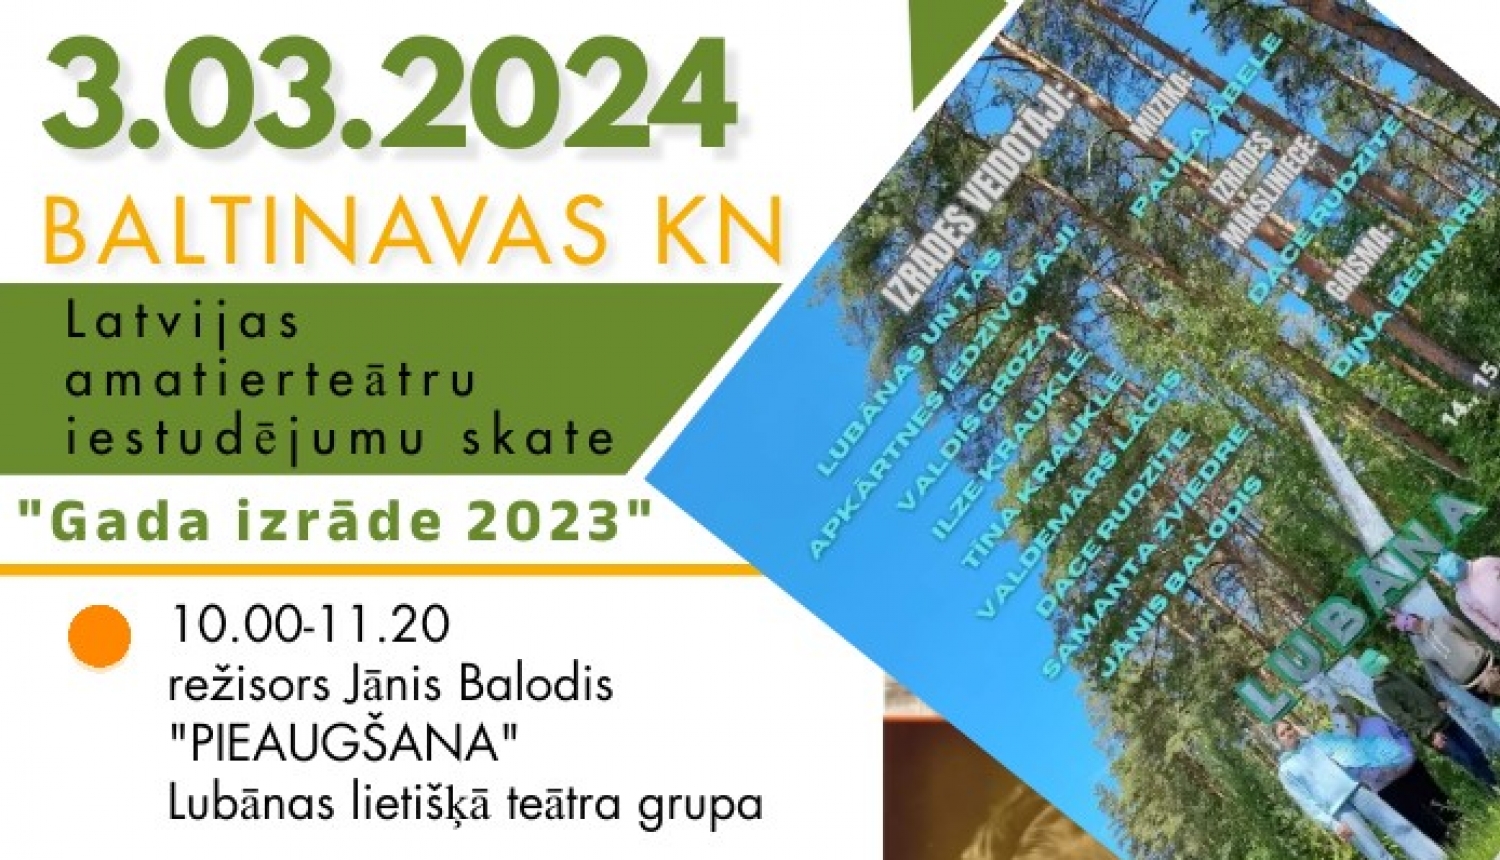 Baltinavas Kultūras namā notiks Latvijas amatierteātru iestudējumu skate